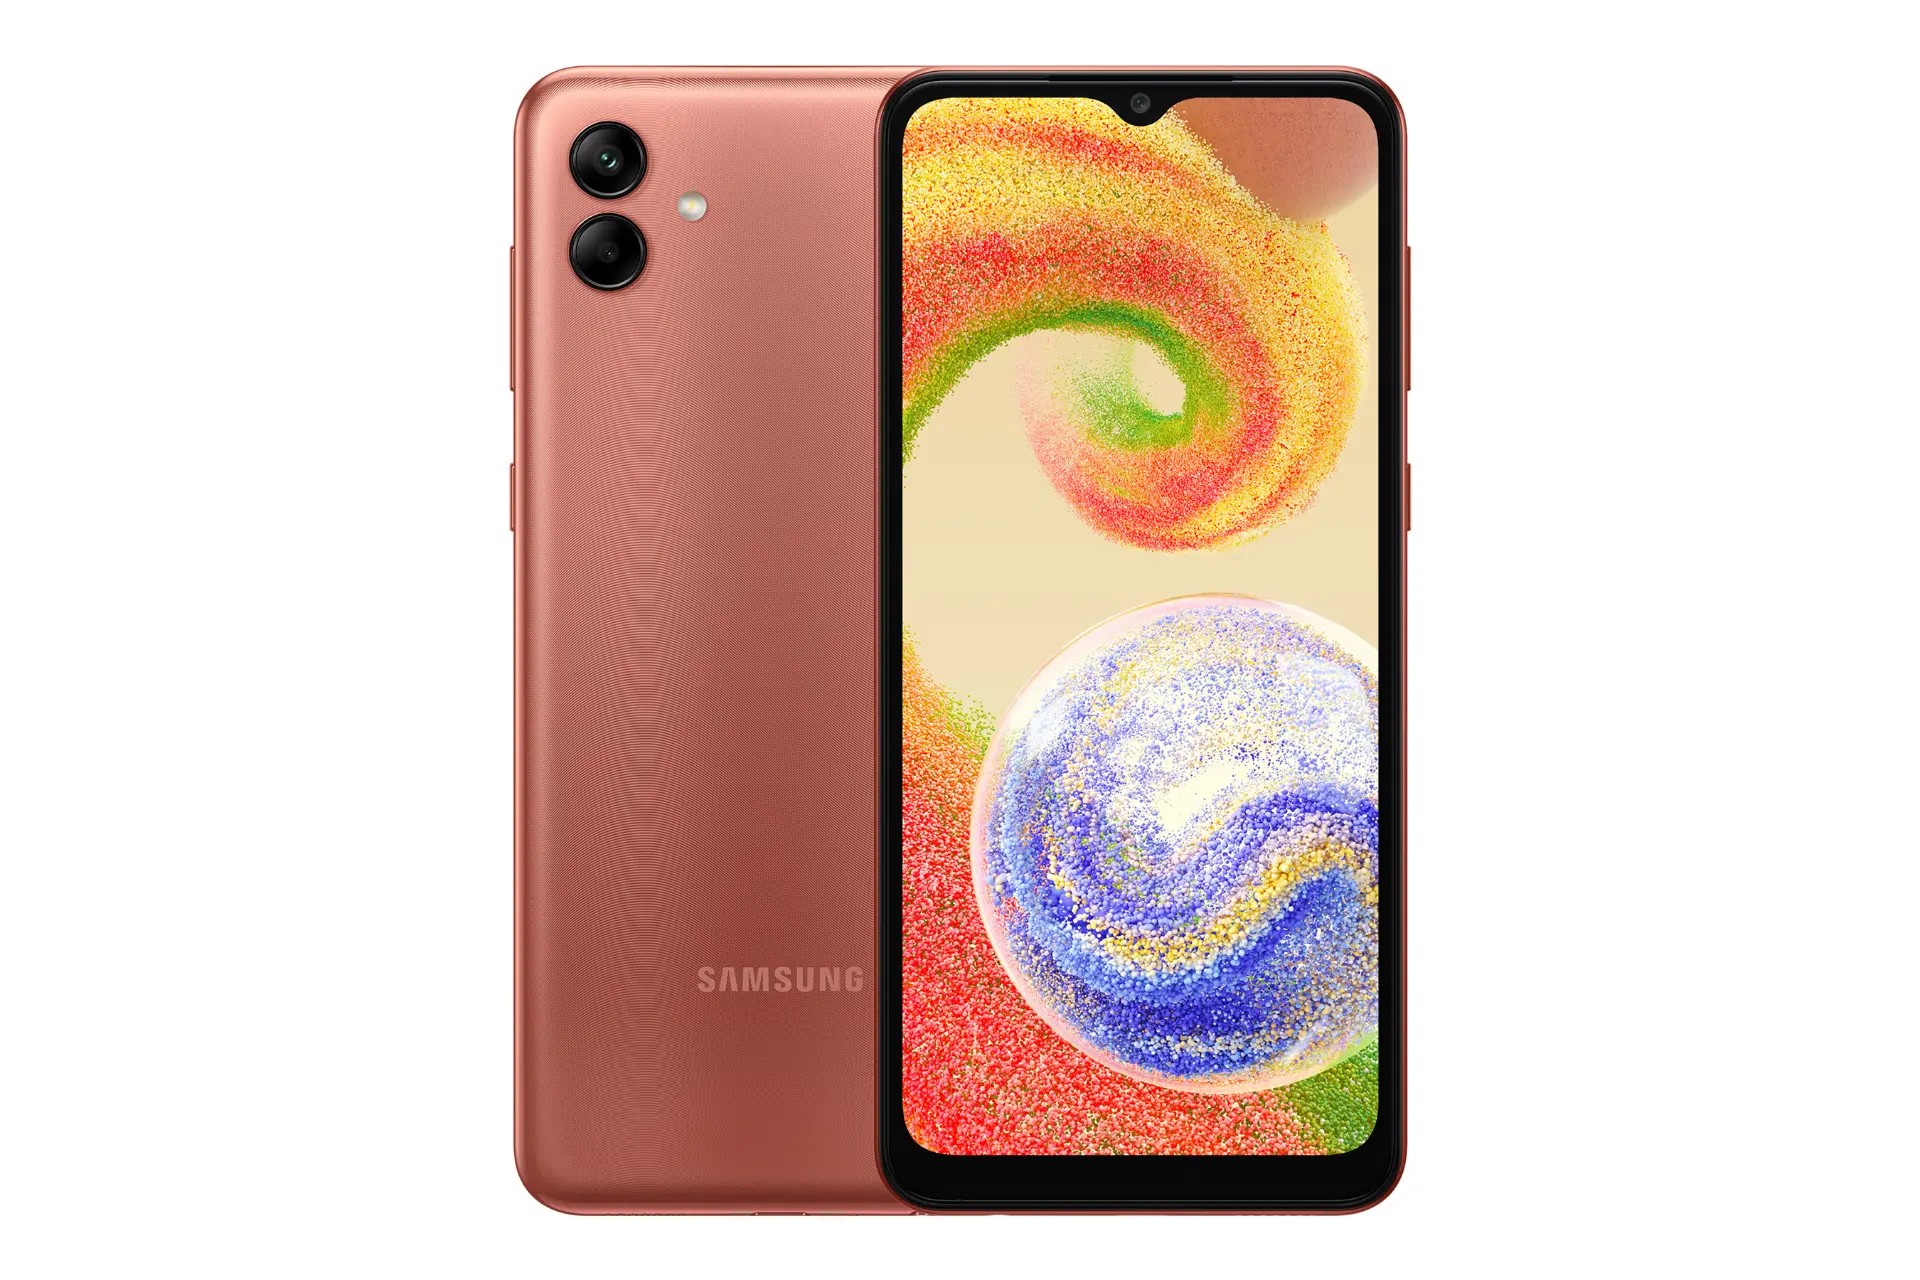 نمای کلی گوشی موبایل گلکسی A04 سامسونگ / Samsung Galaxy A04 با نمایشگر روشن و نمایش لوگو و دوربین رنگ مسی